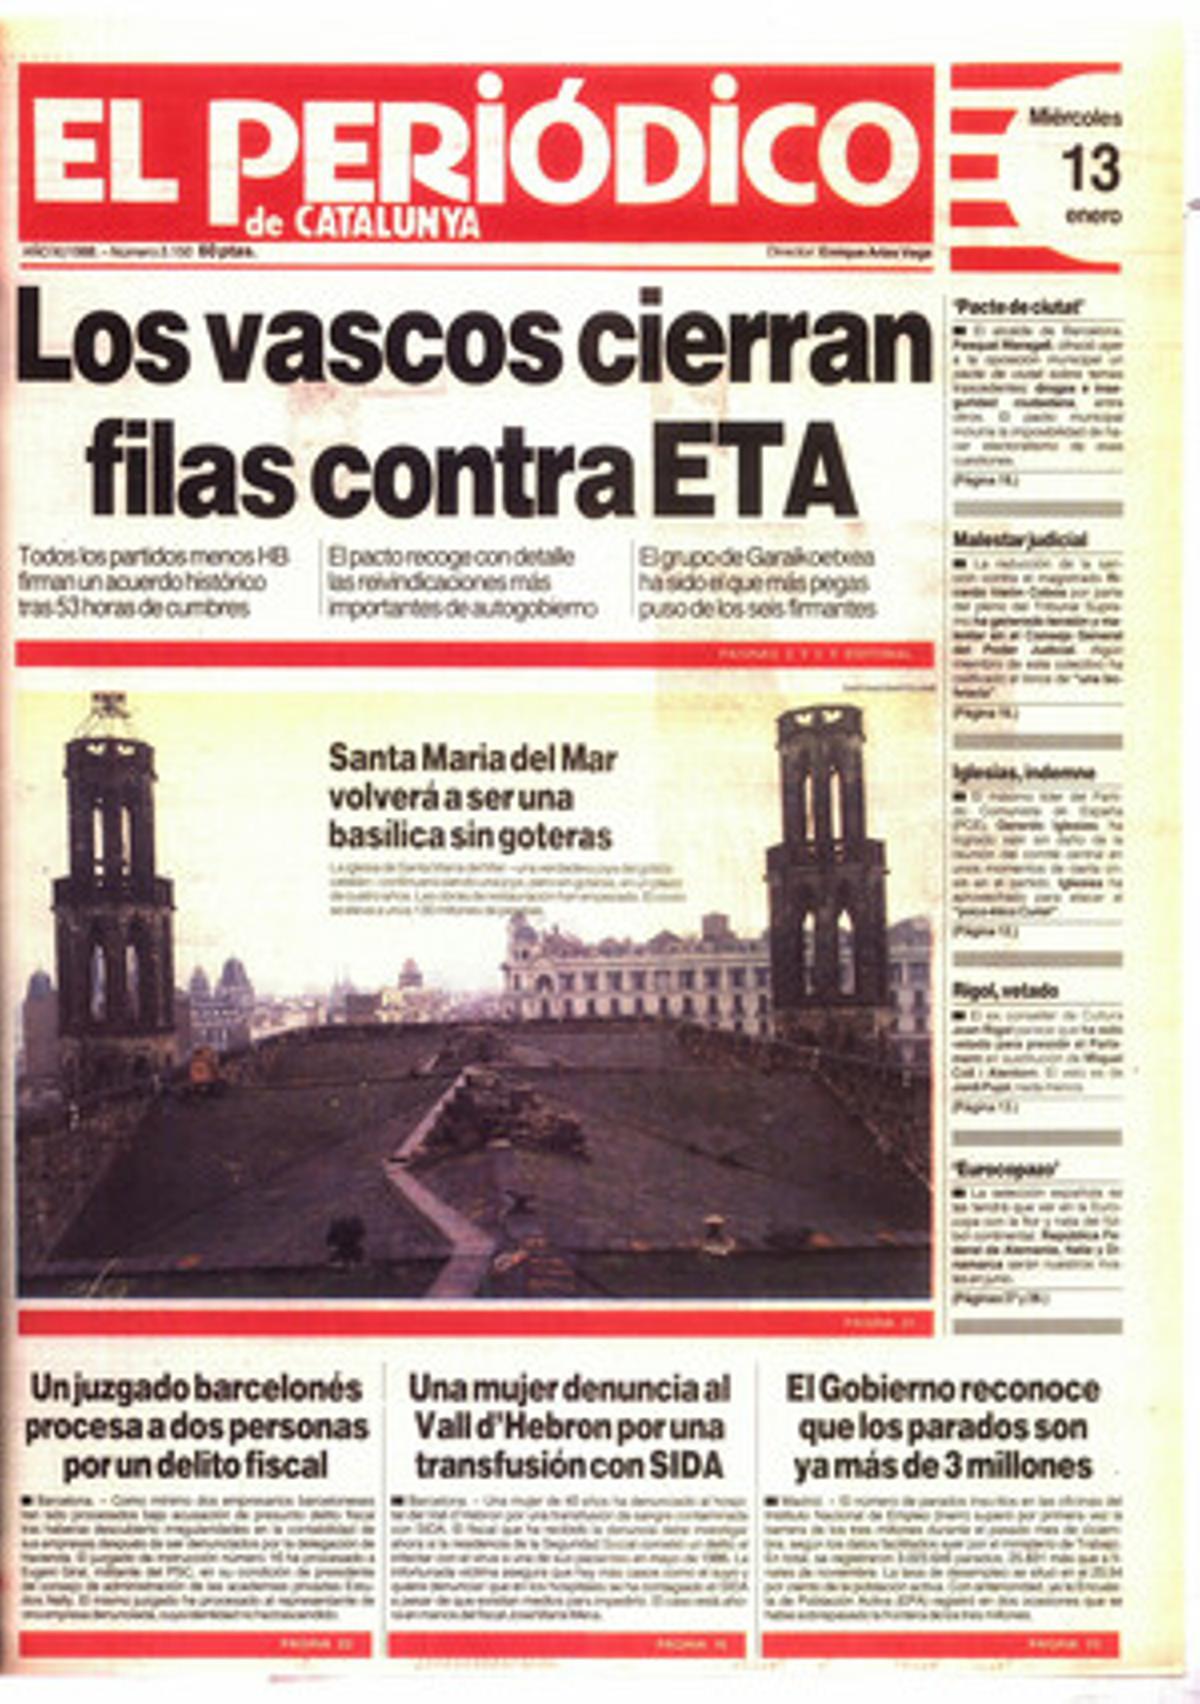 Els bascos fan pinya contra ETA amb el pacte d’Ajuria Enea. 13/1/1988